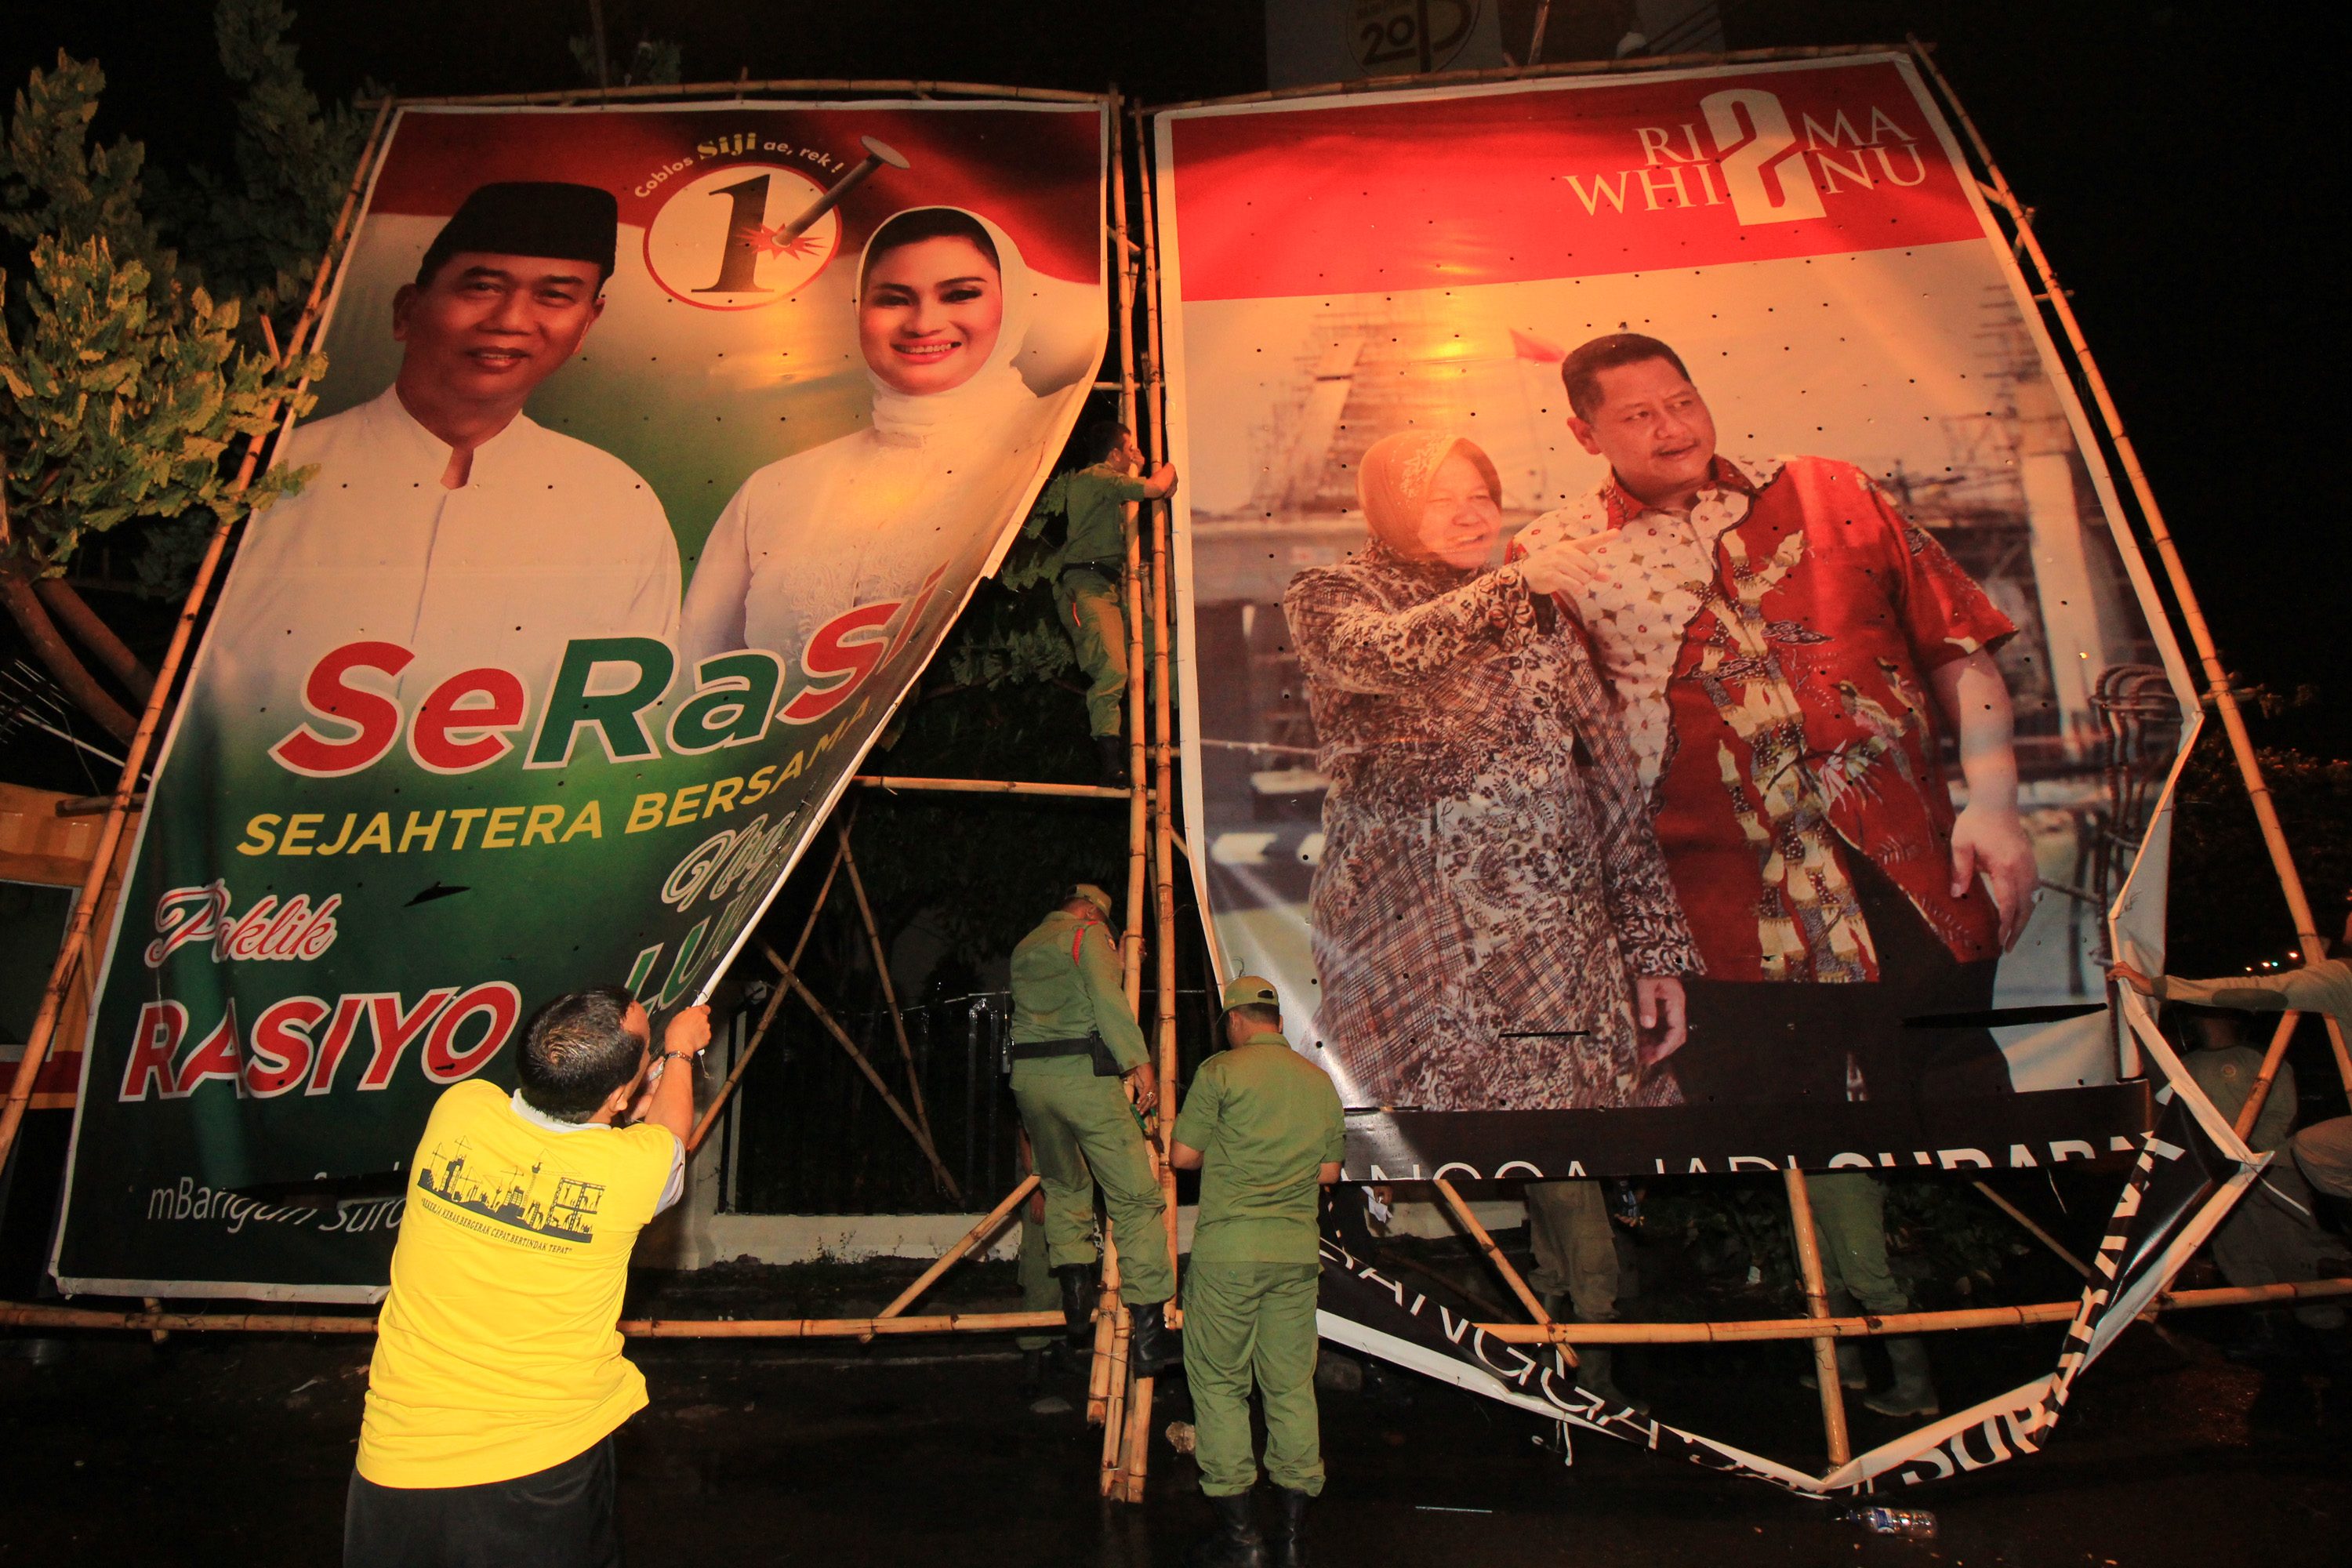 Petugas membongkar alat peraga kampanye bergambar pasangan calon wali kota/wakil wali kota dalam Pilkada Surabaya 2015 di Surabaya, Jawa Timur, pada 6 Desember 2015, yang sudah melampaui masa kampanye. Foto oleh Didik Suhartono/Antara  